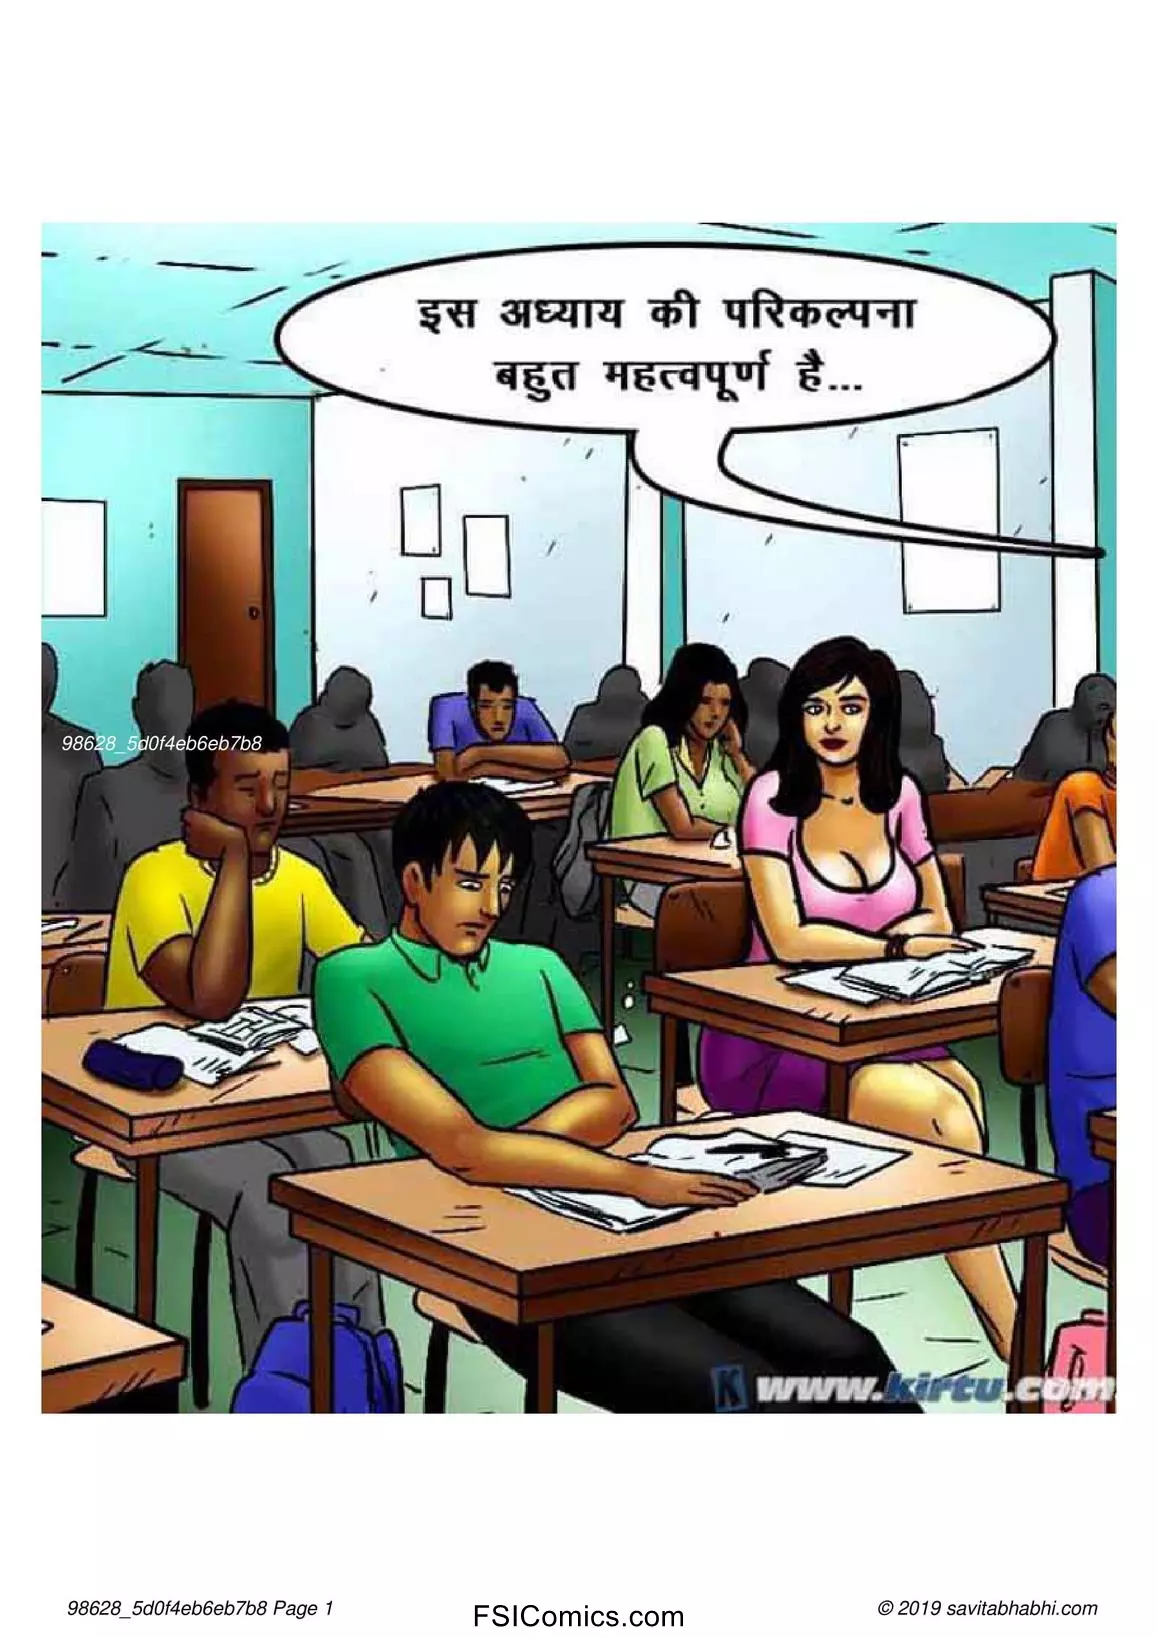 Savita Bhabhi Episode 69 Hindi – छात्रों का मामला – सविता भाभी गयी – XXX अपार्टमेंट में - 11 - FSIComics